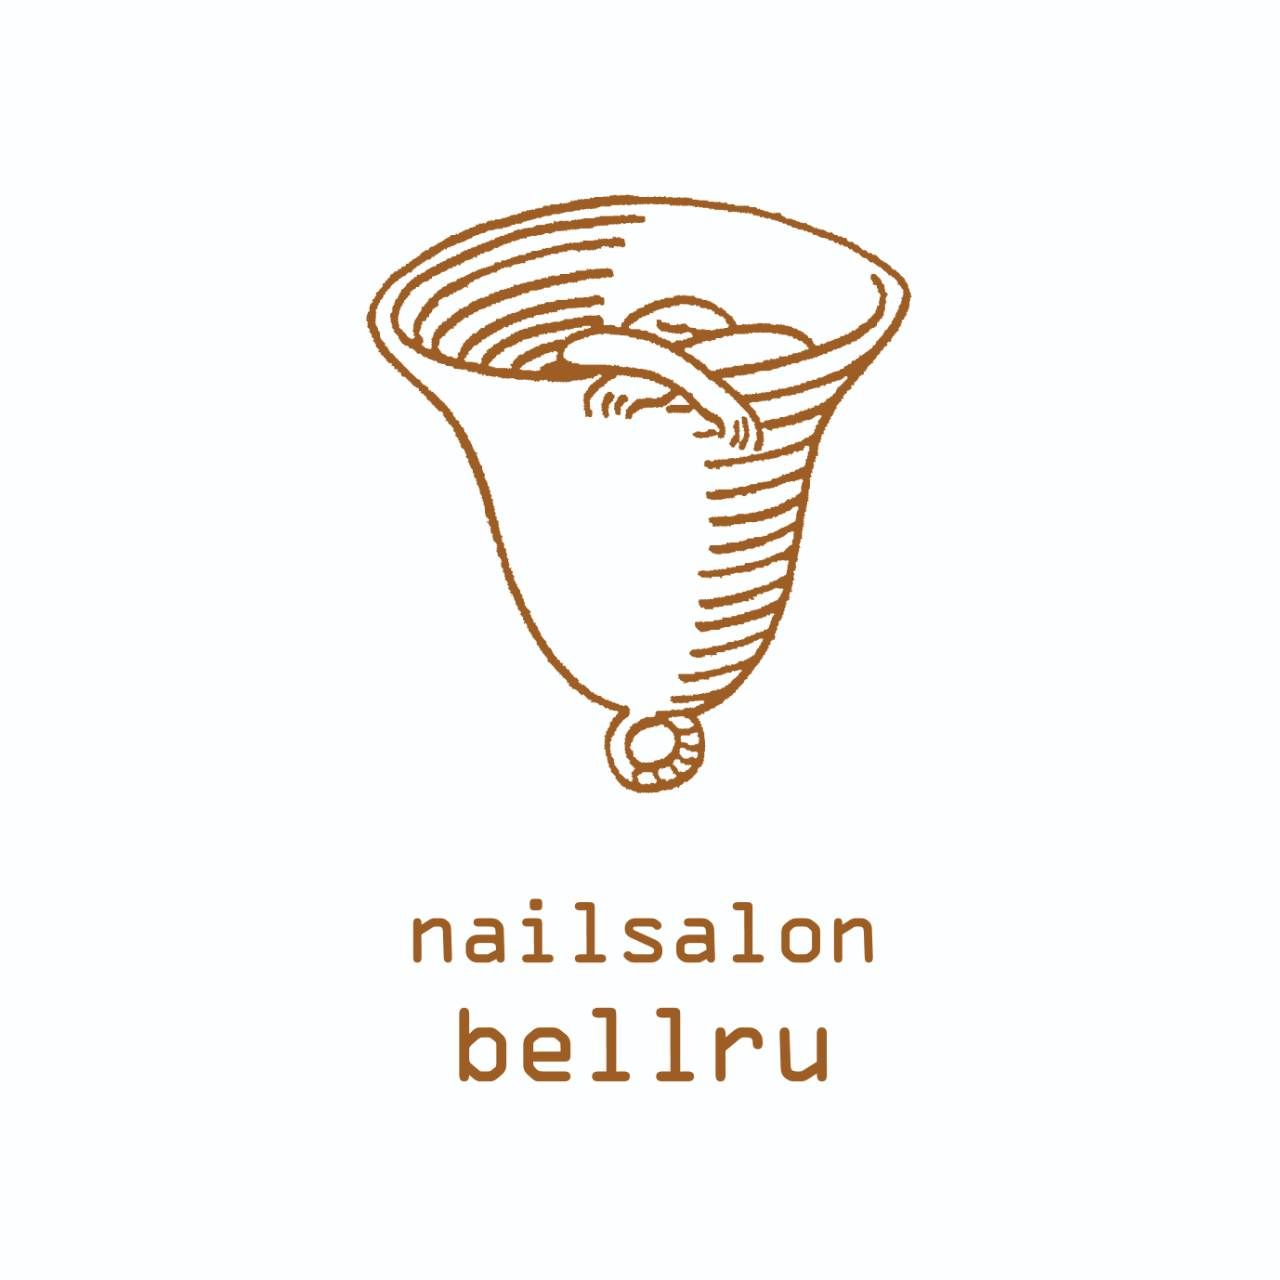 nailsalon bellru (西郷村 白河市ネイルサロン べルル) 